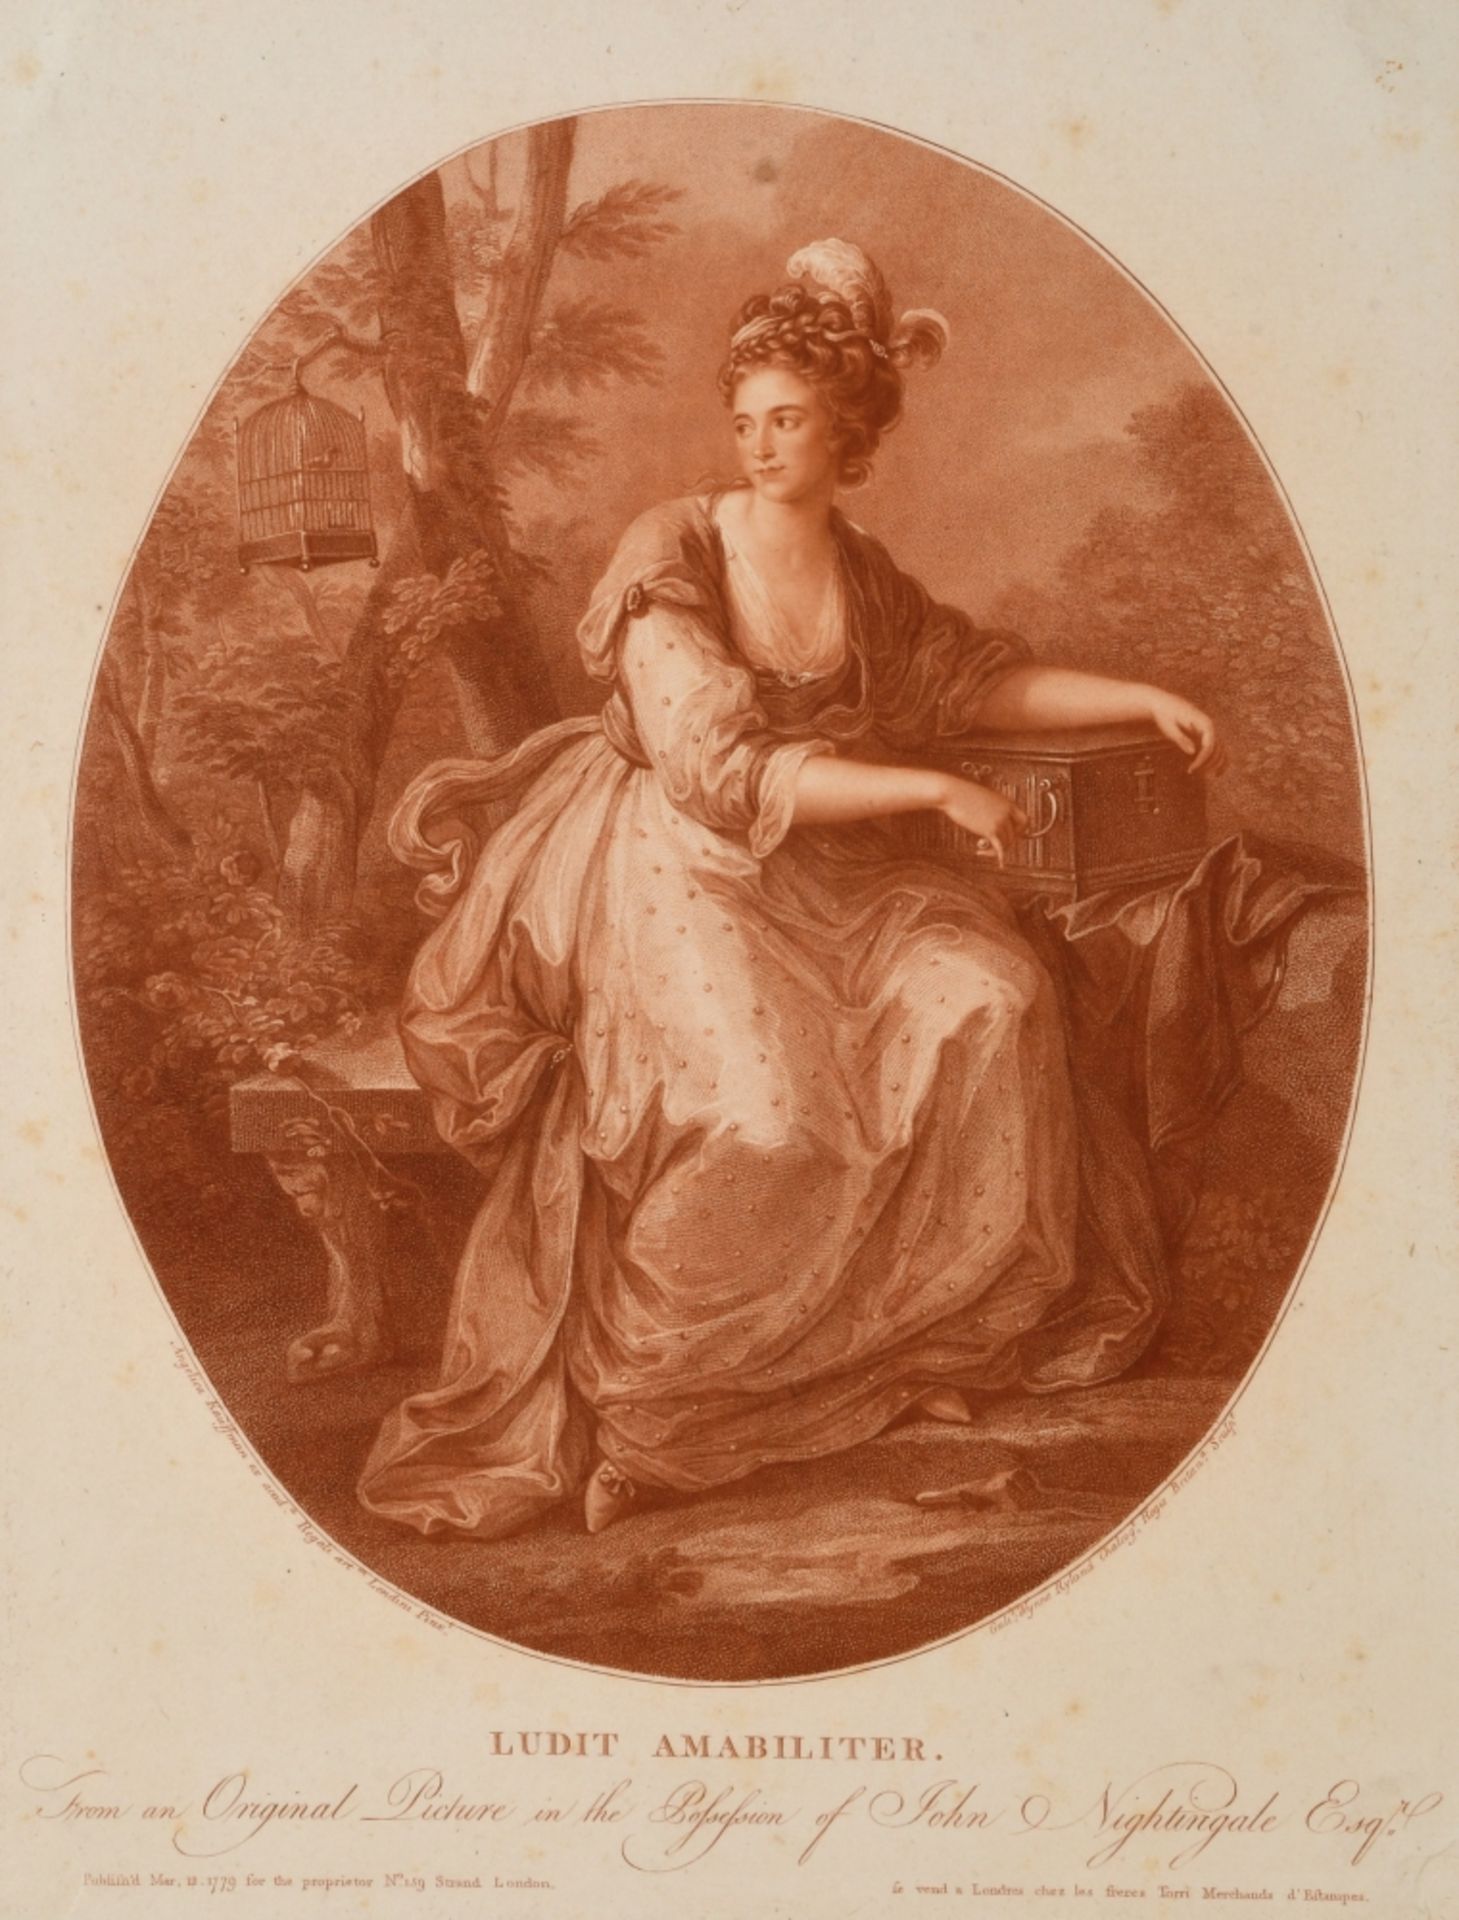 Ryland, William Wynne, 1732 - 1783 London